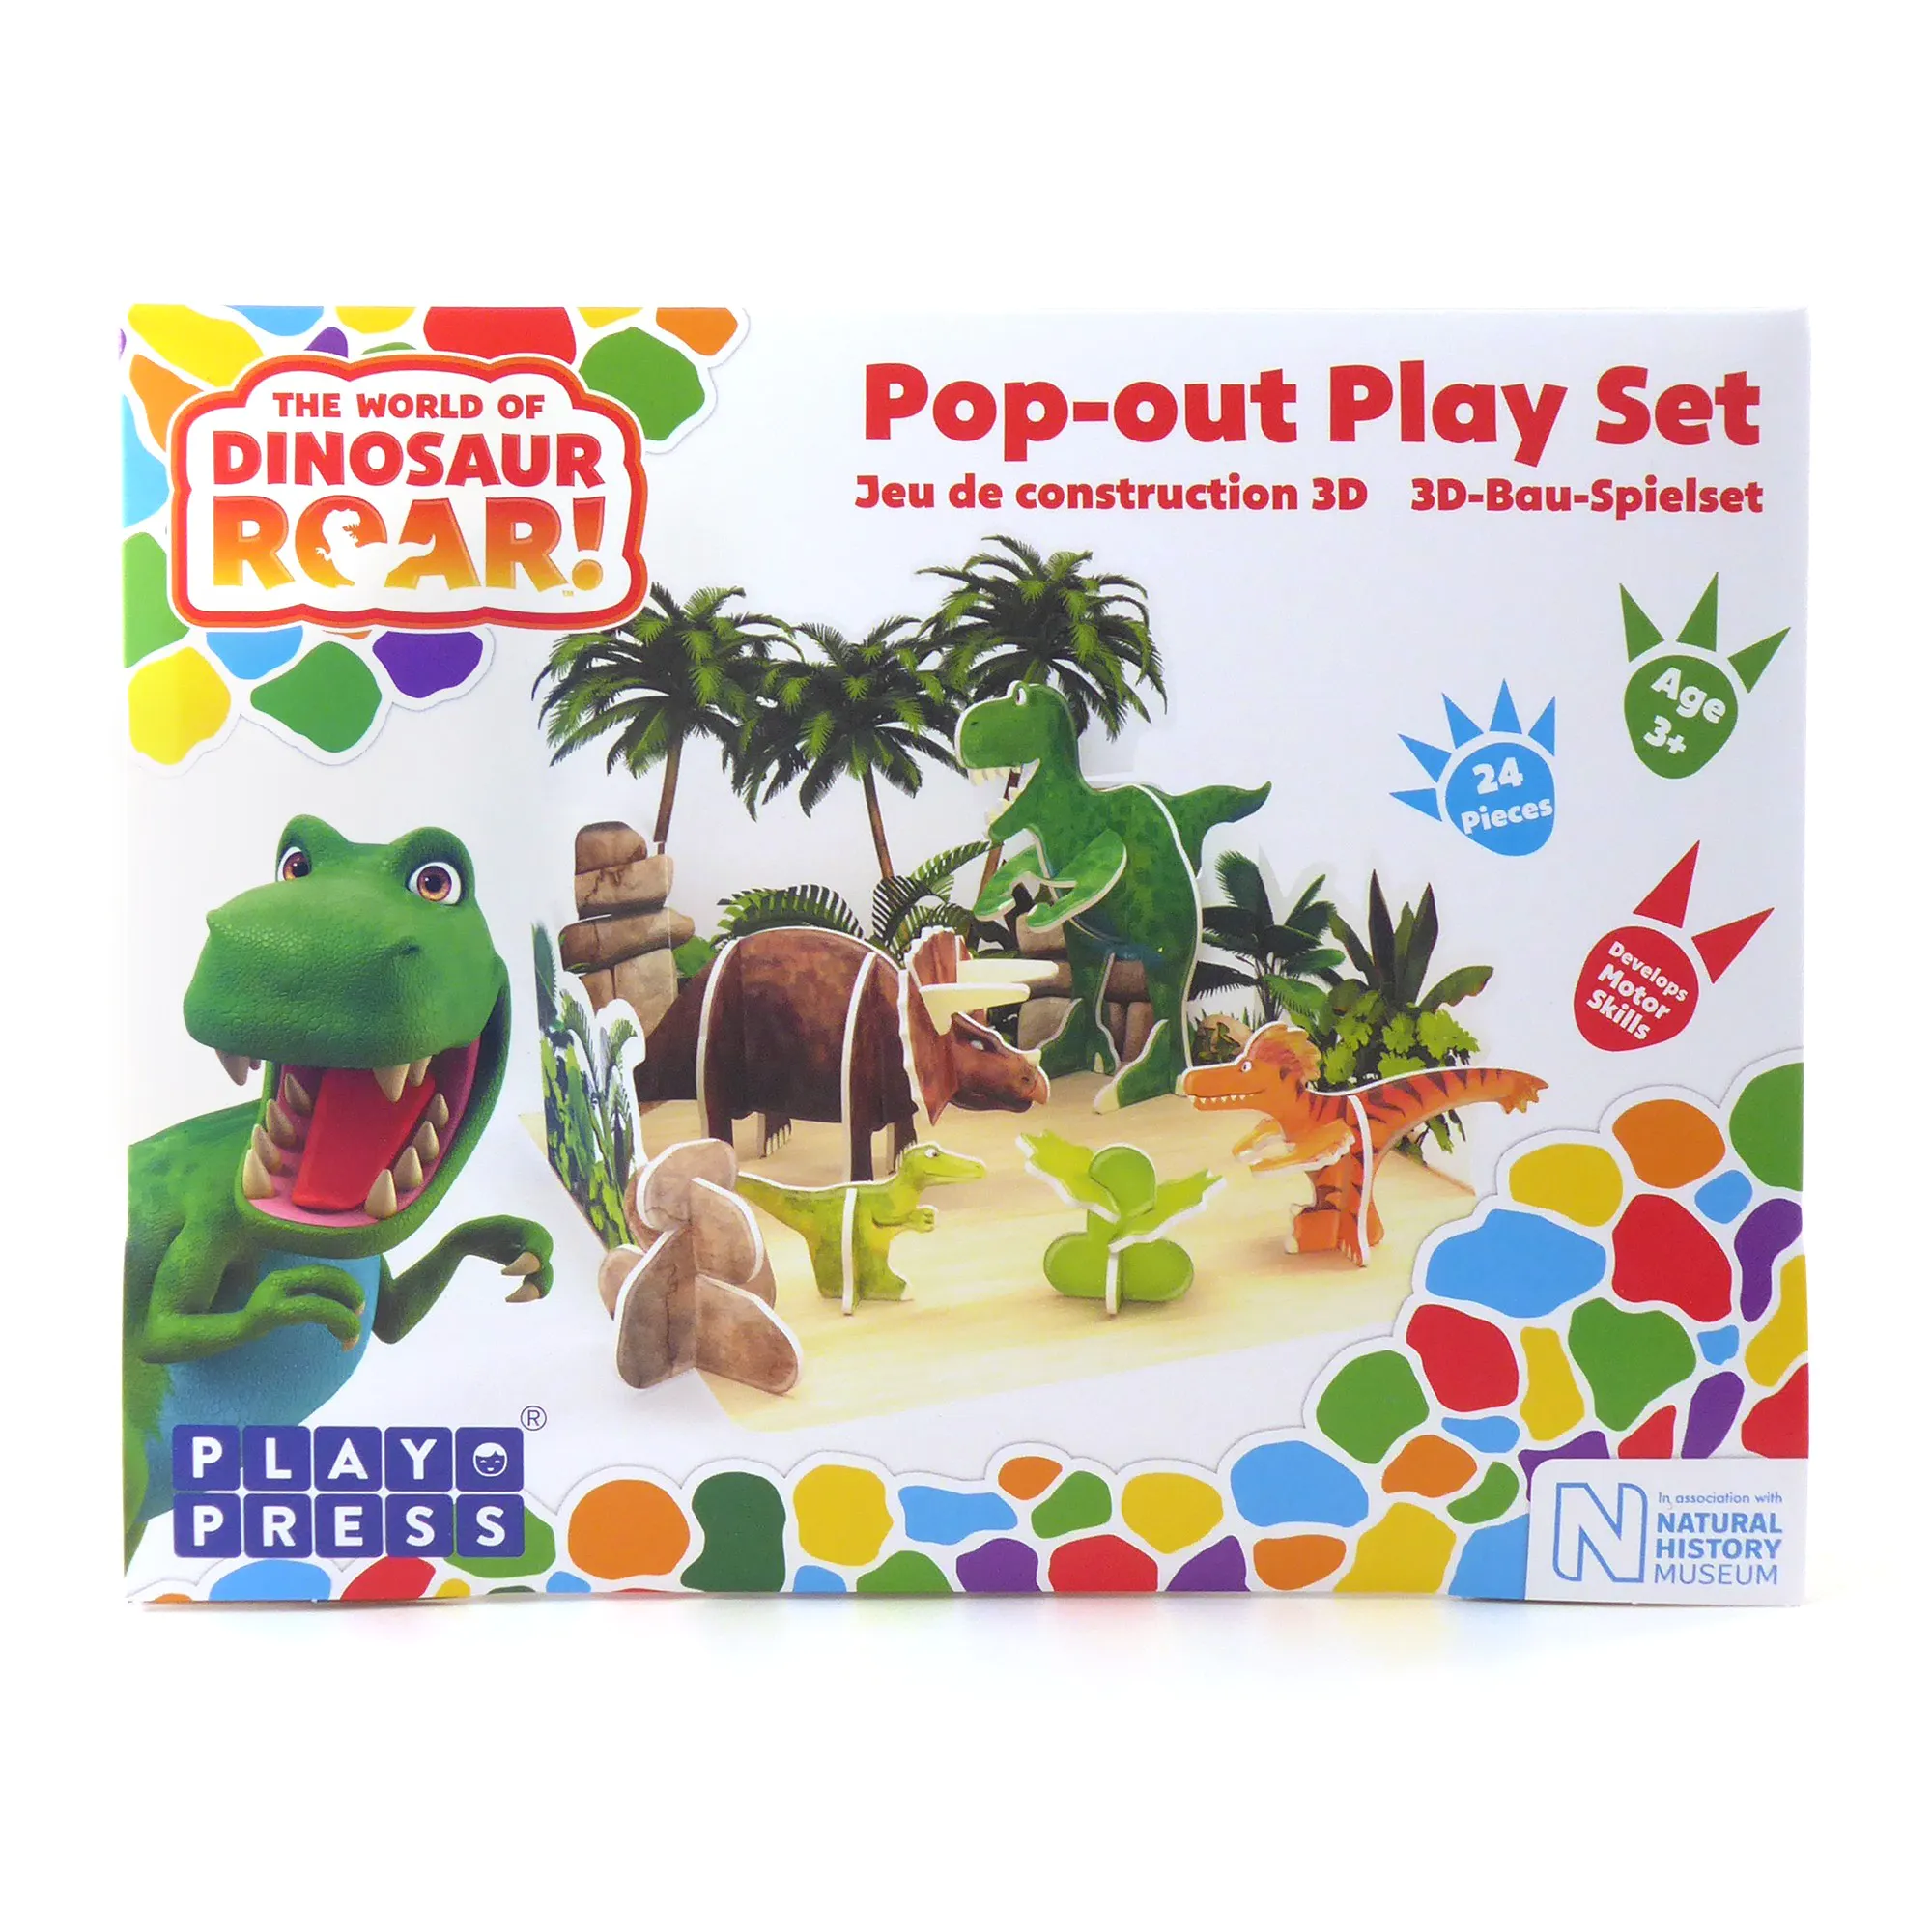 förpackning som visar playpress dinosaurier lekset bygg ihop